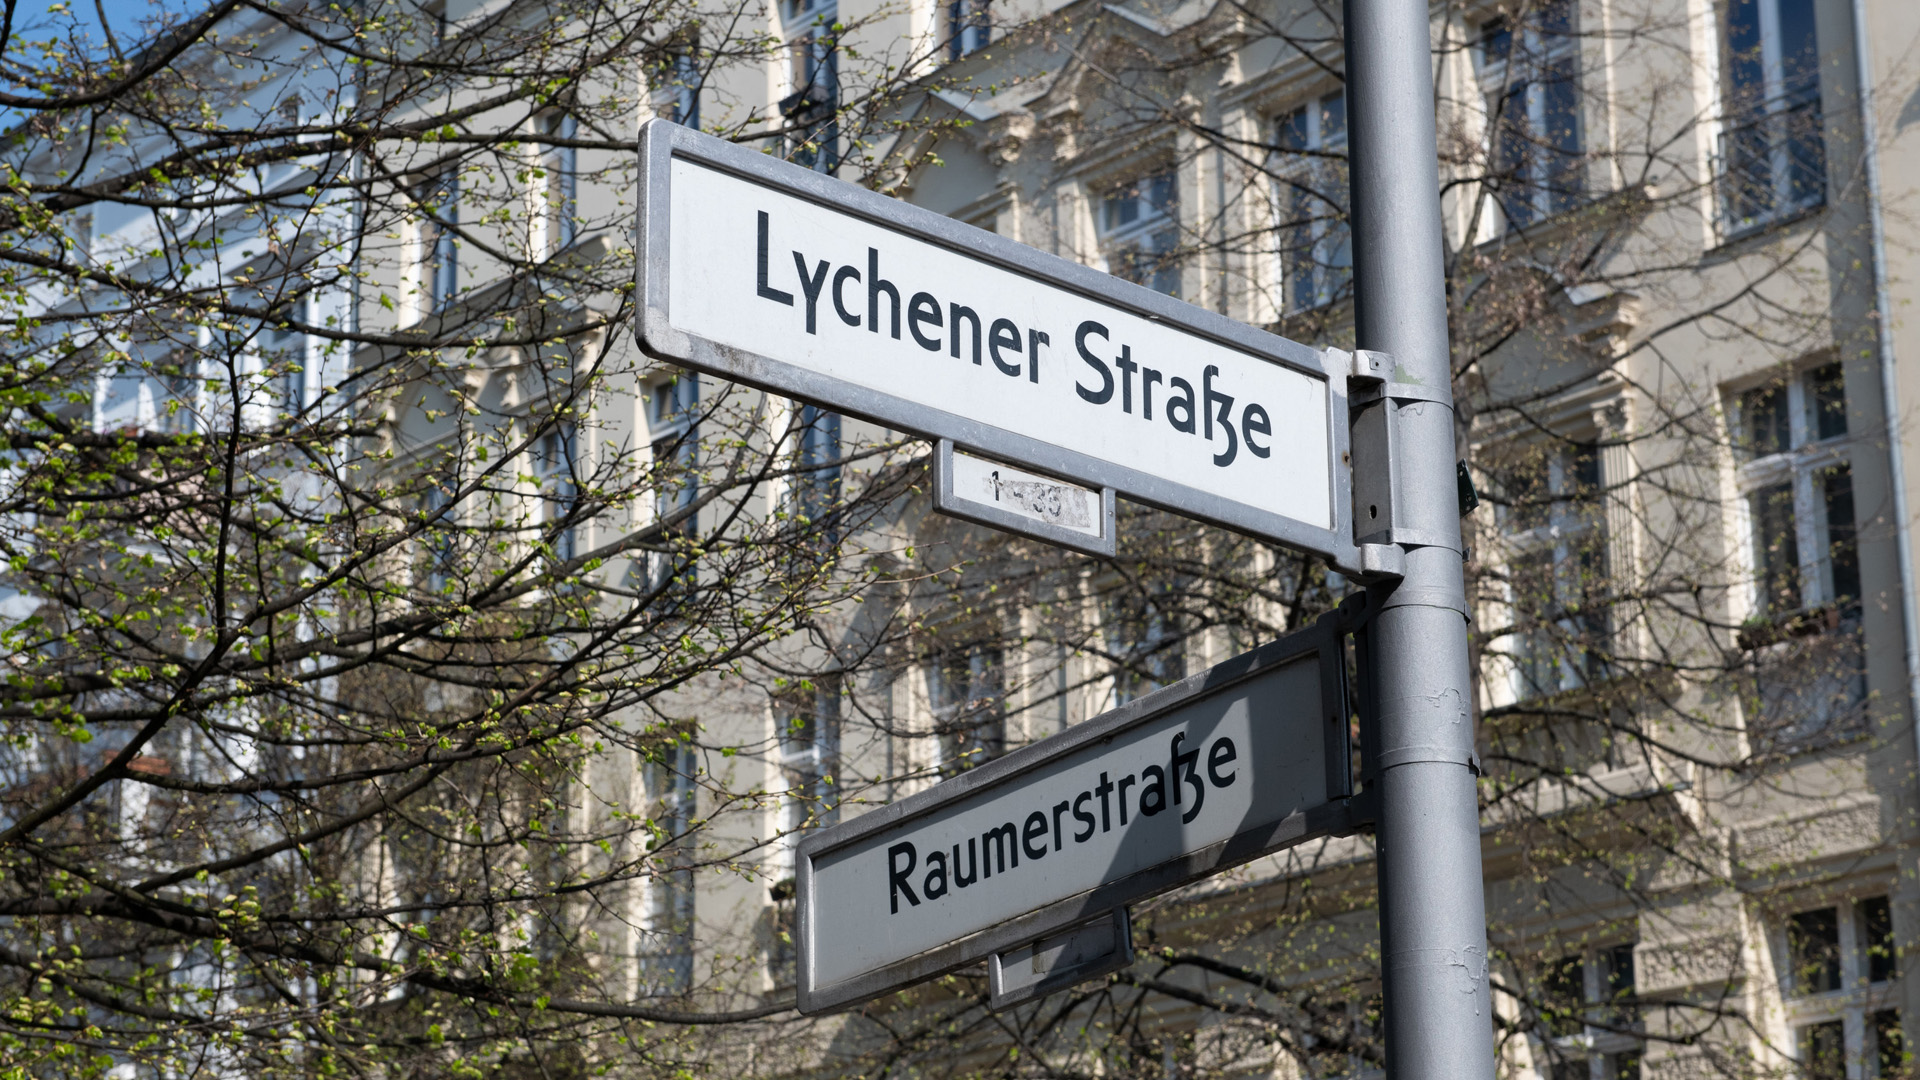 Die antisemitische Attacke ereignete sich nach Polizeiangaben an der Straßenecke Lychener Straße/Raumerstraße im Stadtteil Prenzlauer Berg